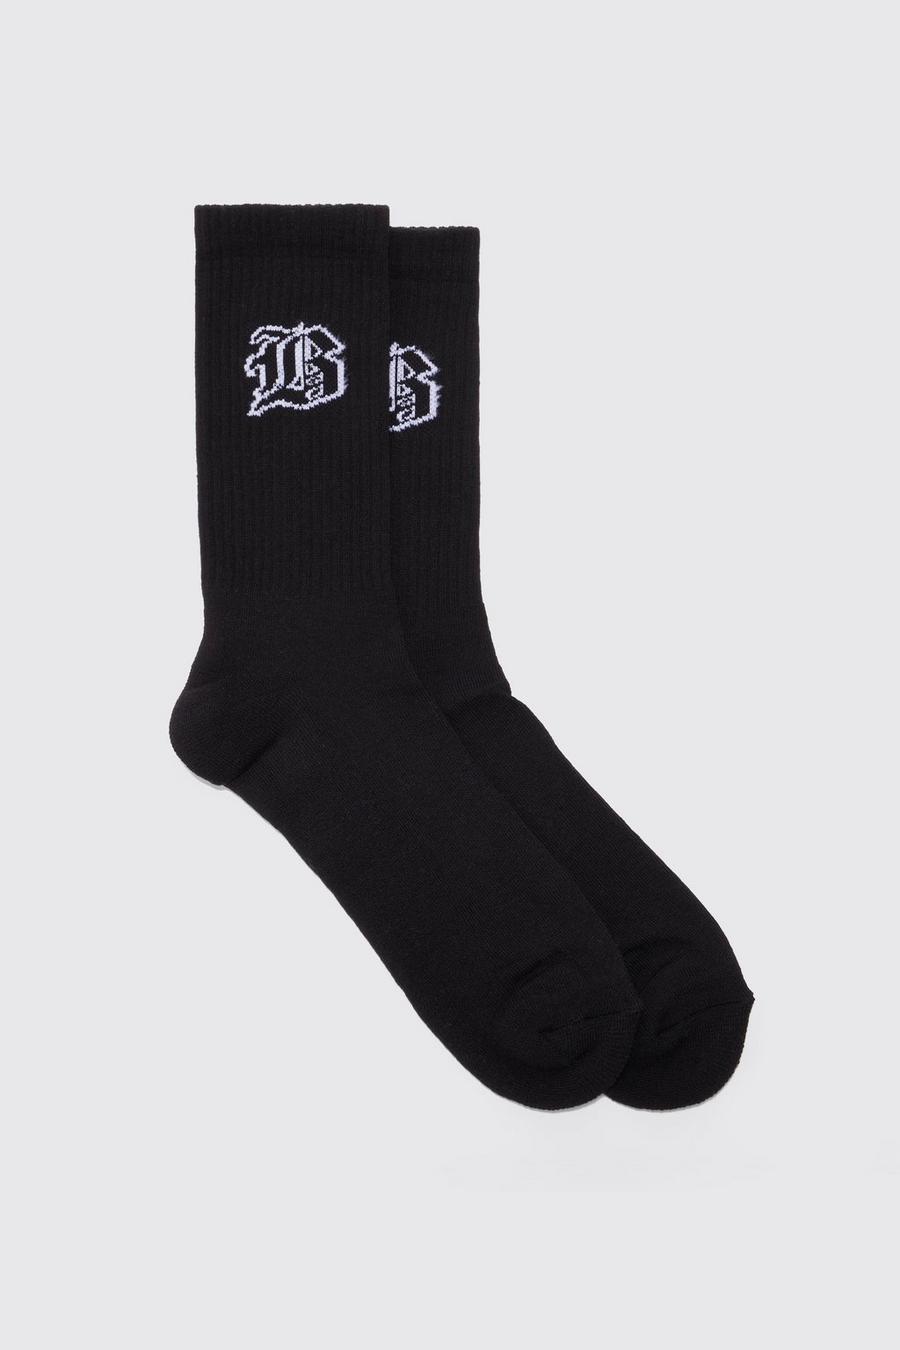 Gothic B Sports Socks, Black nero